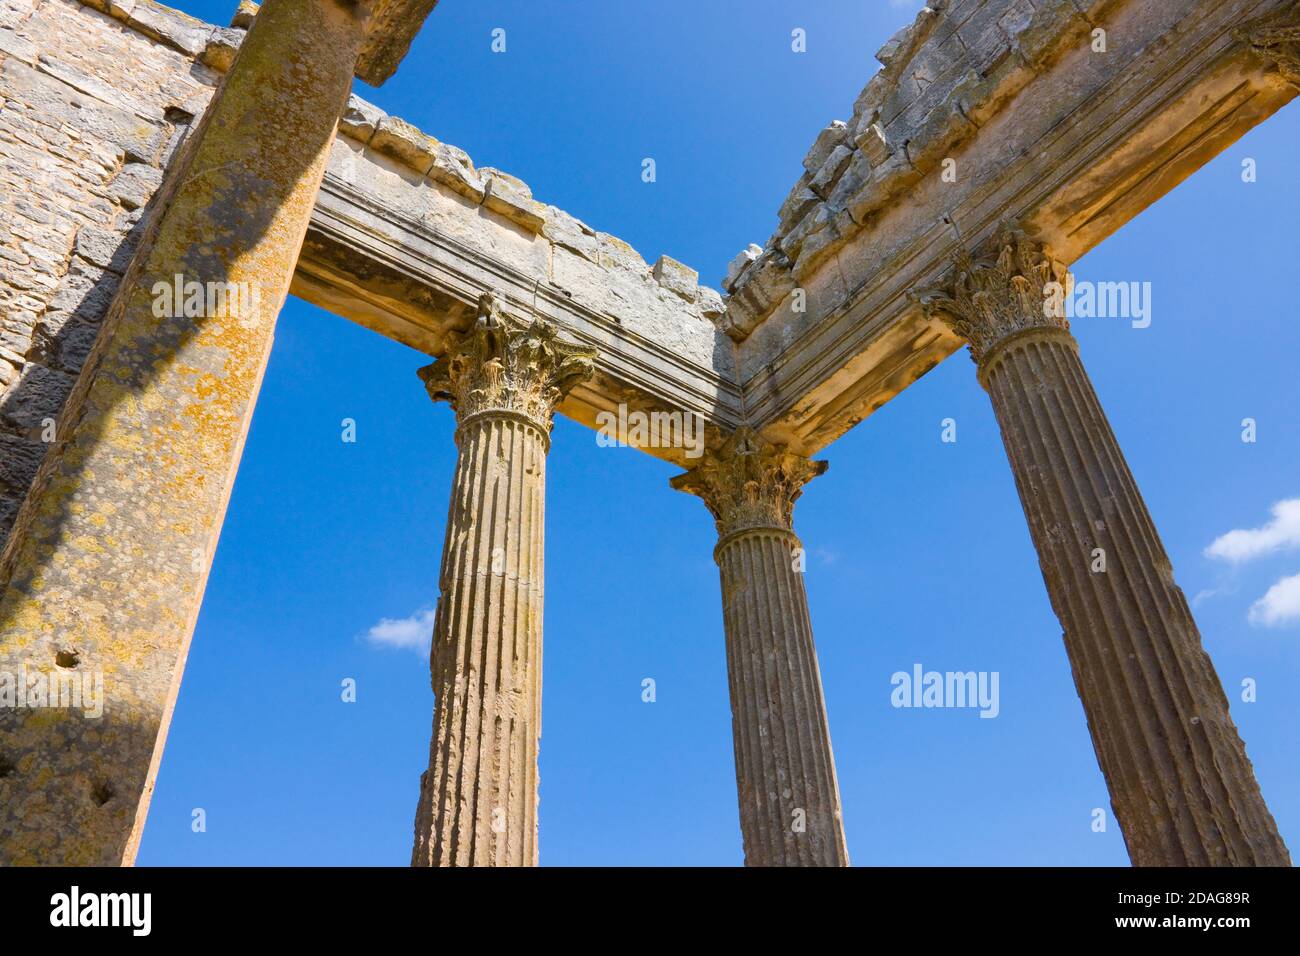 Capitole sur les ruines de Thugga, site classé au patrimoine mondial de l'UNESCO, Tunisie Banque D'Images